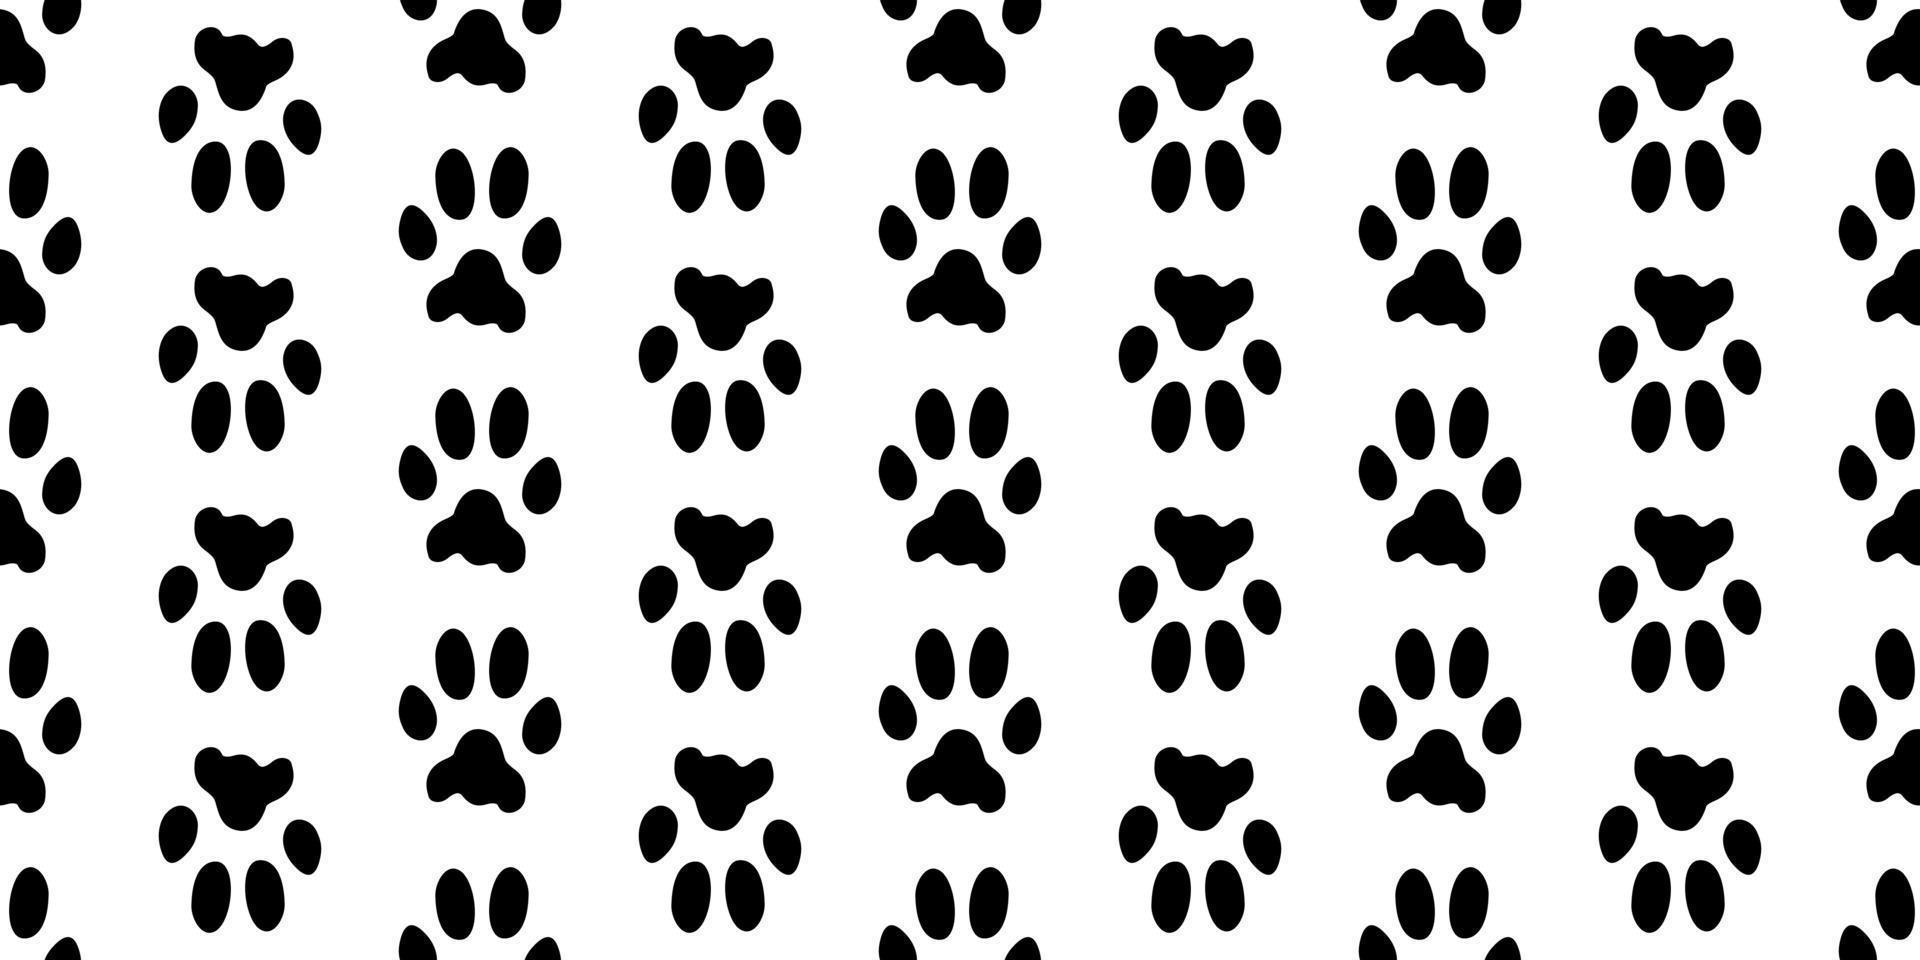 Haustier Fußabdrücke horizontales nahtloses Muster. Tierdruck. schwarze Drucke von Spuren einer Katze, eines Hundes auf weißem Hintergrund. Pfotenabdruck-Silhouetten von Haustieren. schöne Textur. Vektor. vektor